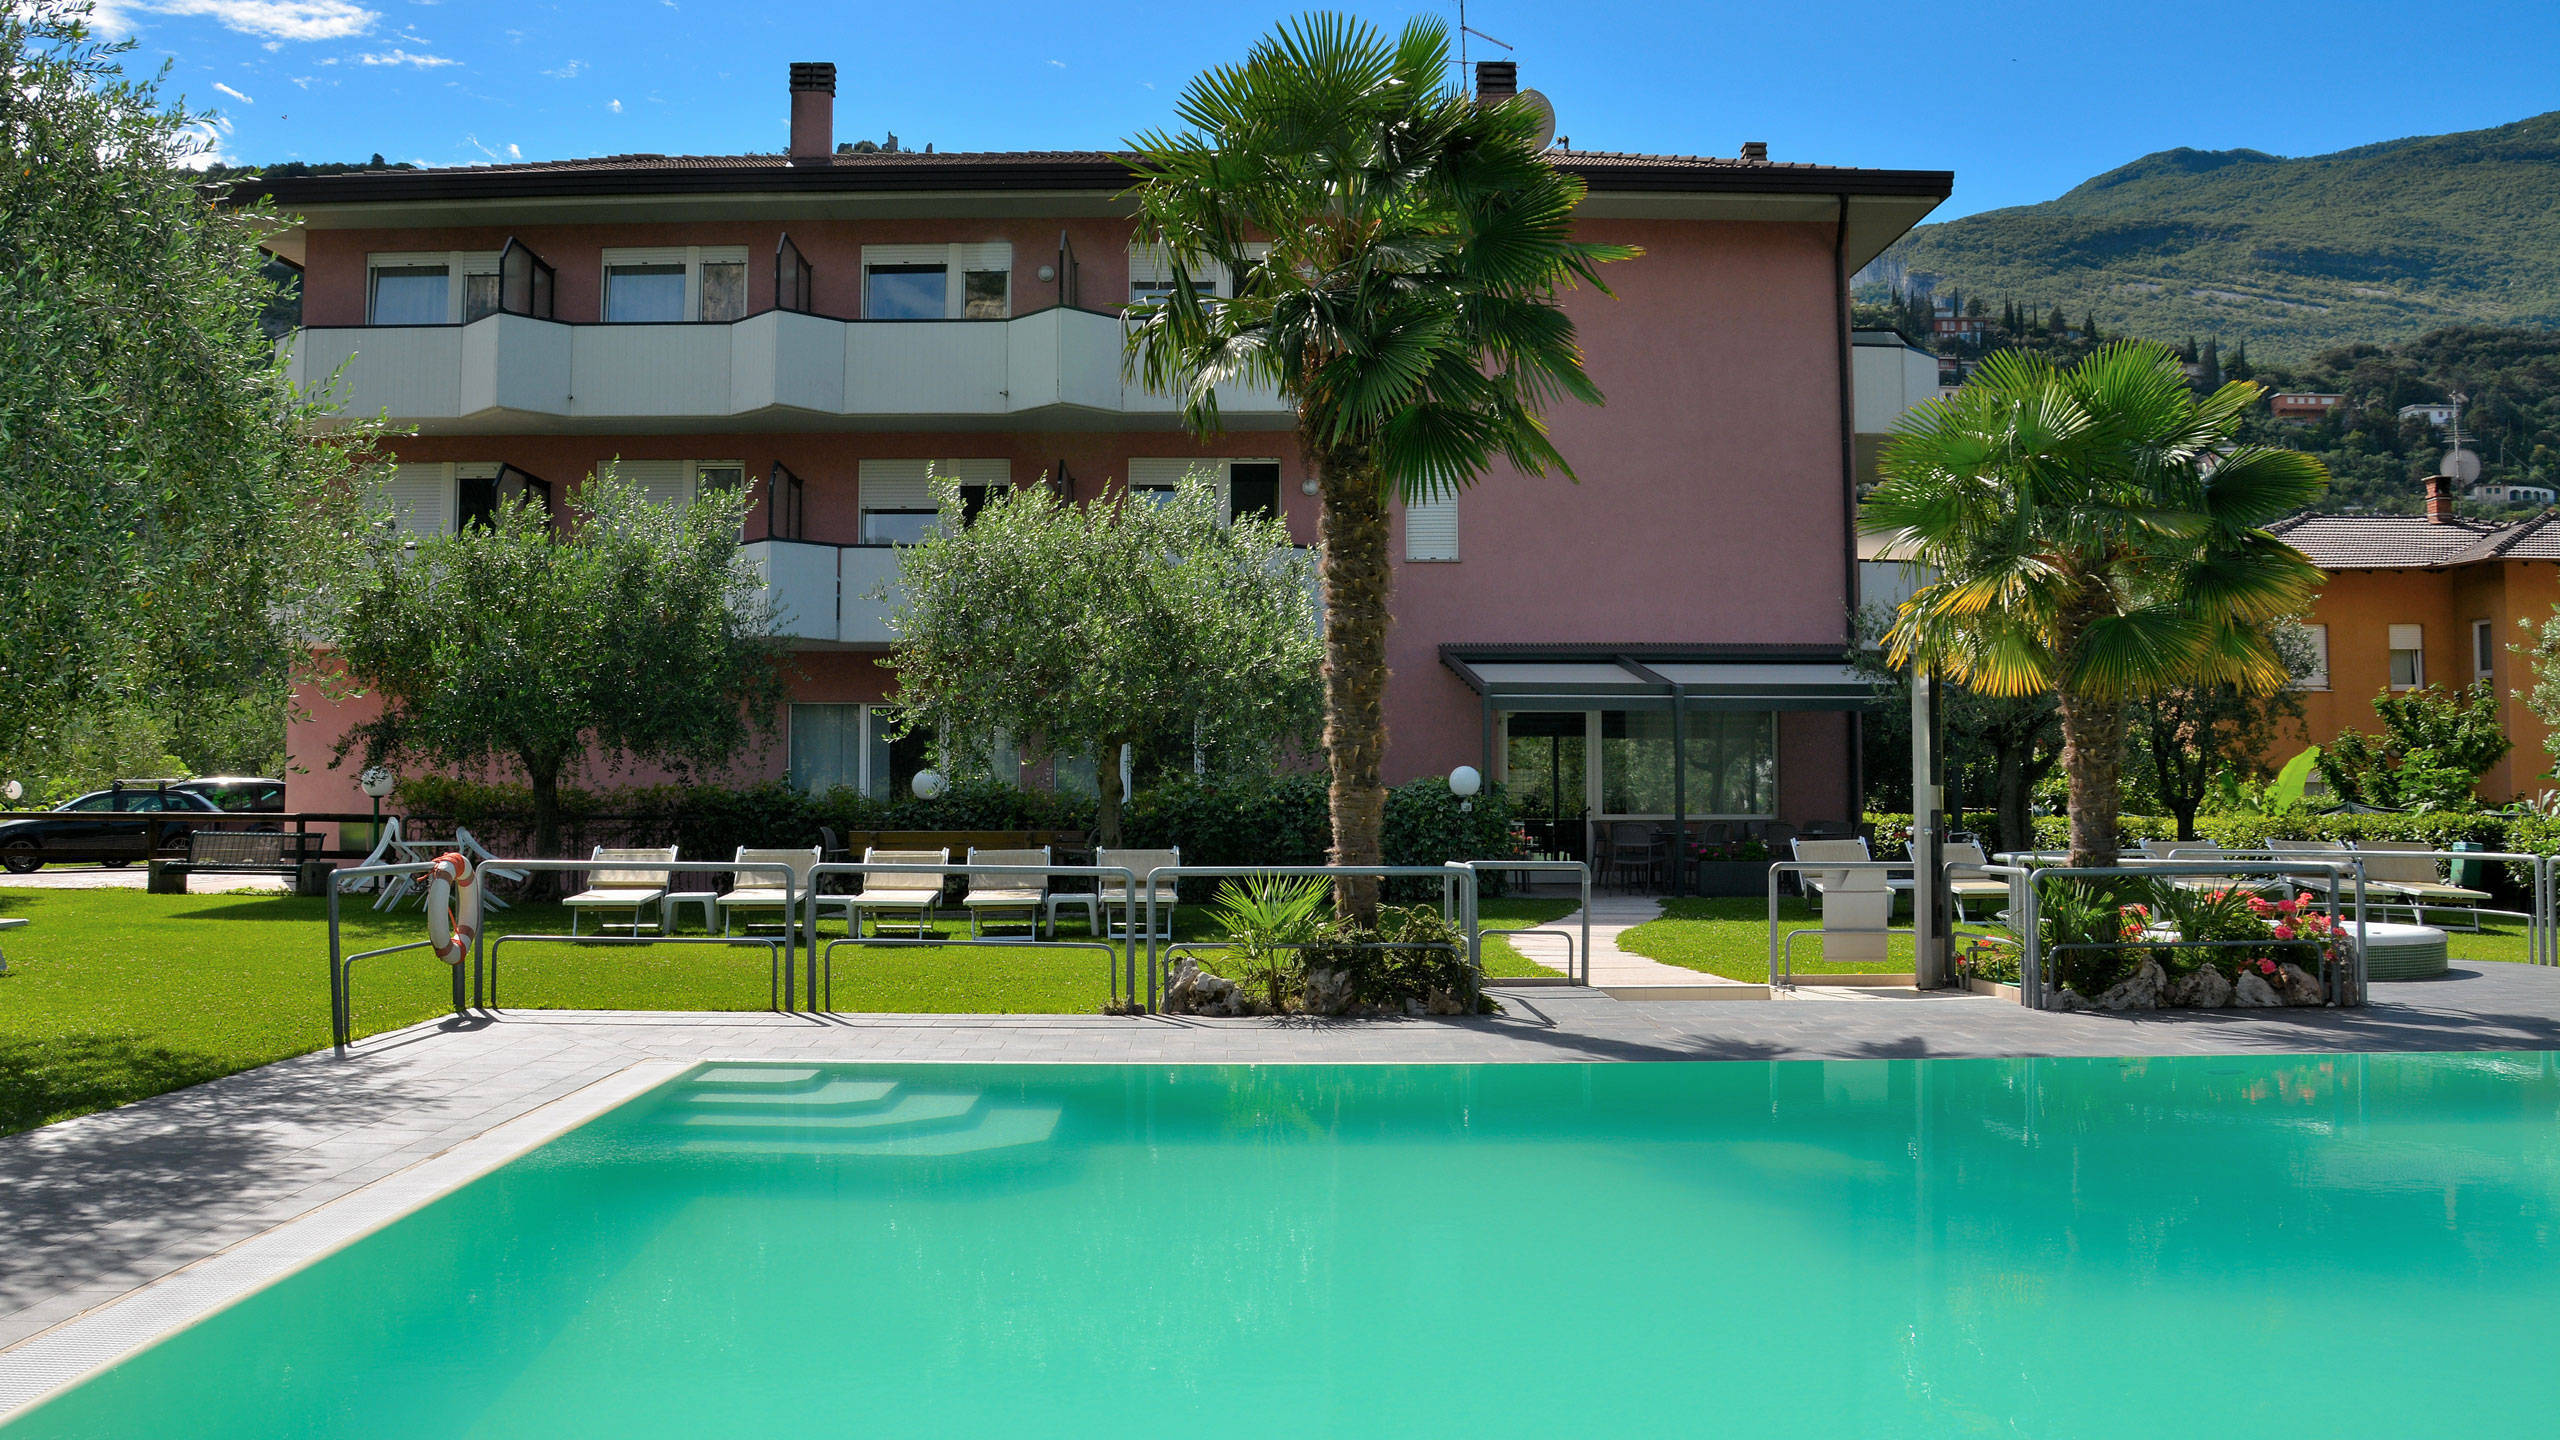 Unser Garda Trentino Blog und Hotelinfos